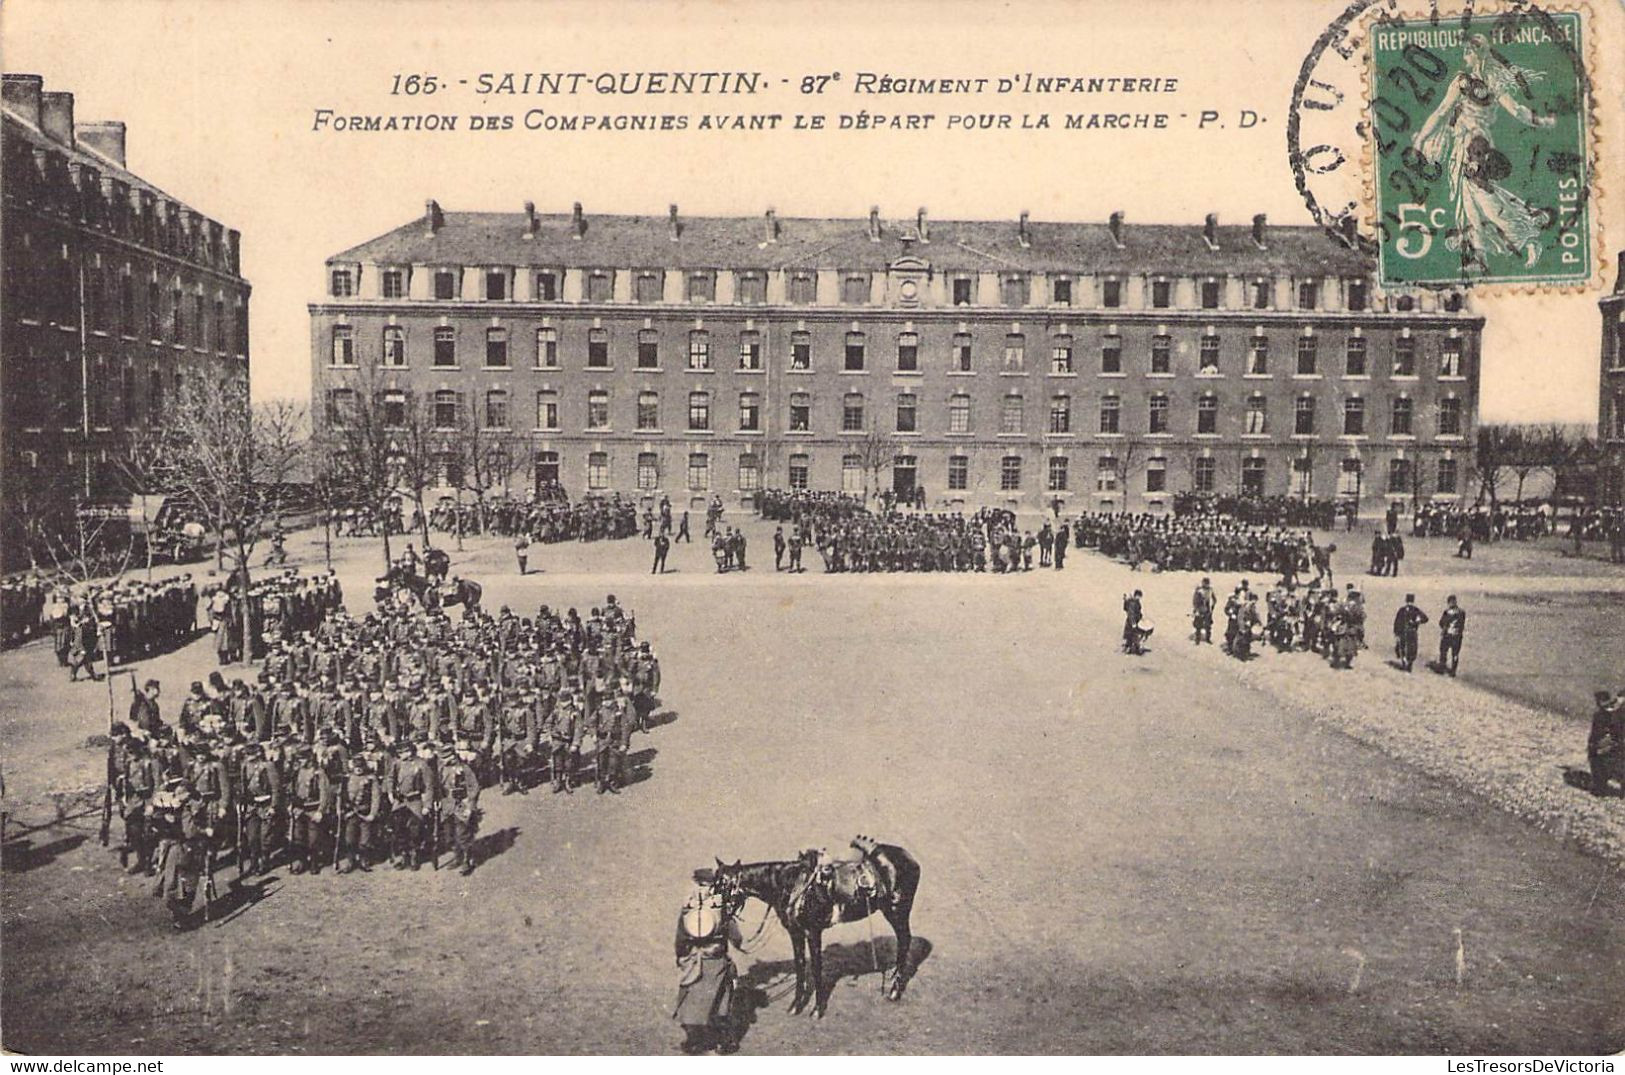 CPA France - Aisne - Saint Quentin - 87e Régiment D'infanterie - Formation Des Compagnies Avant Le Départ Pour La Marche - Saint Quentin